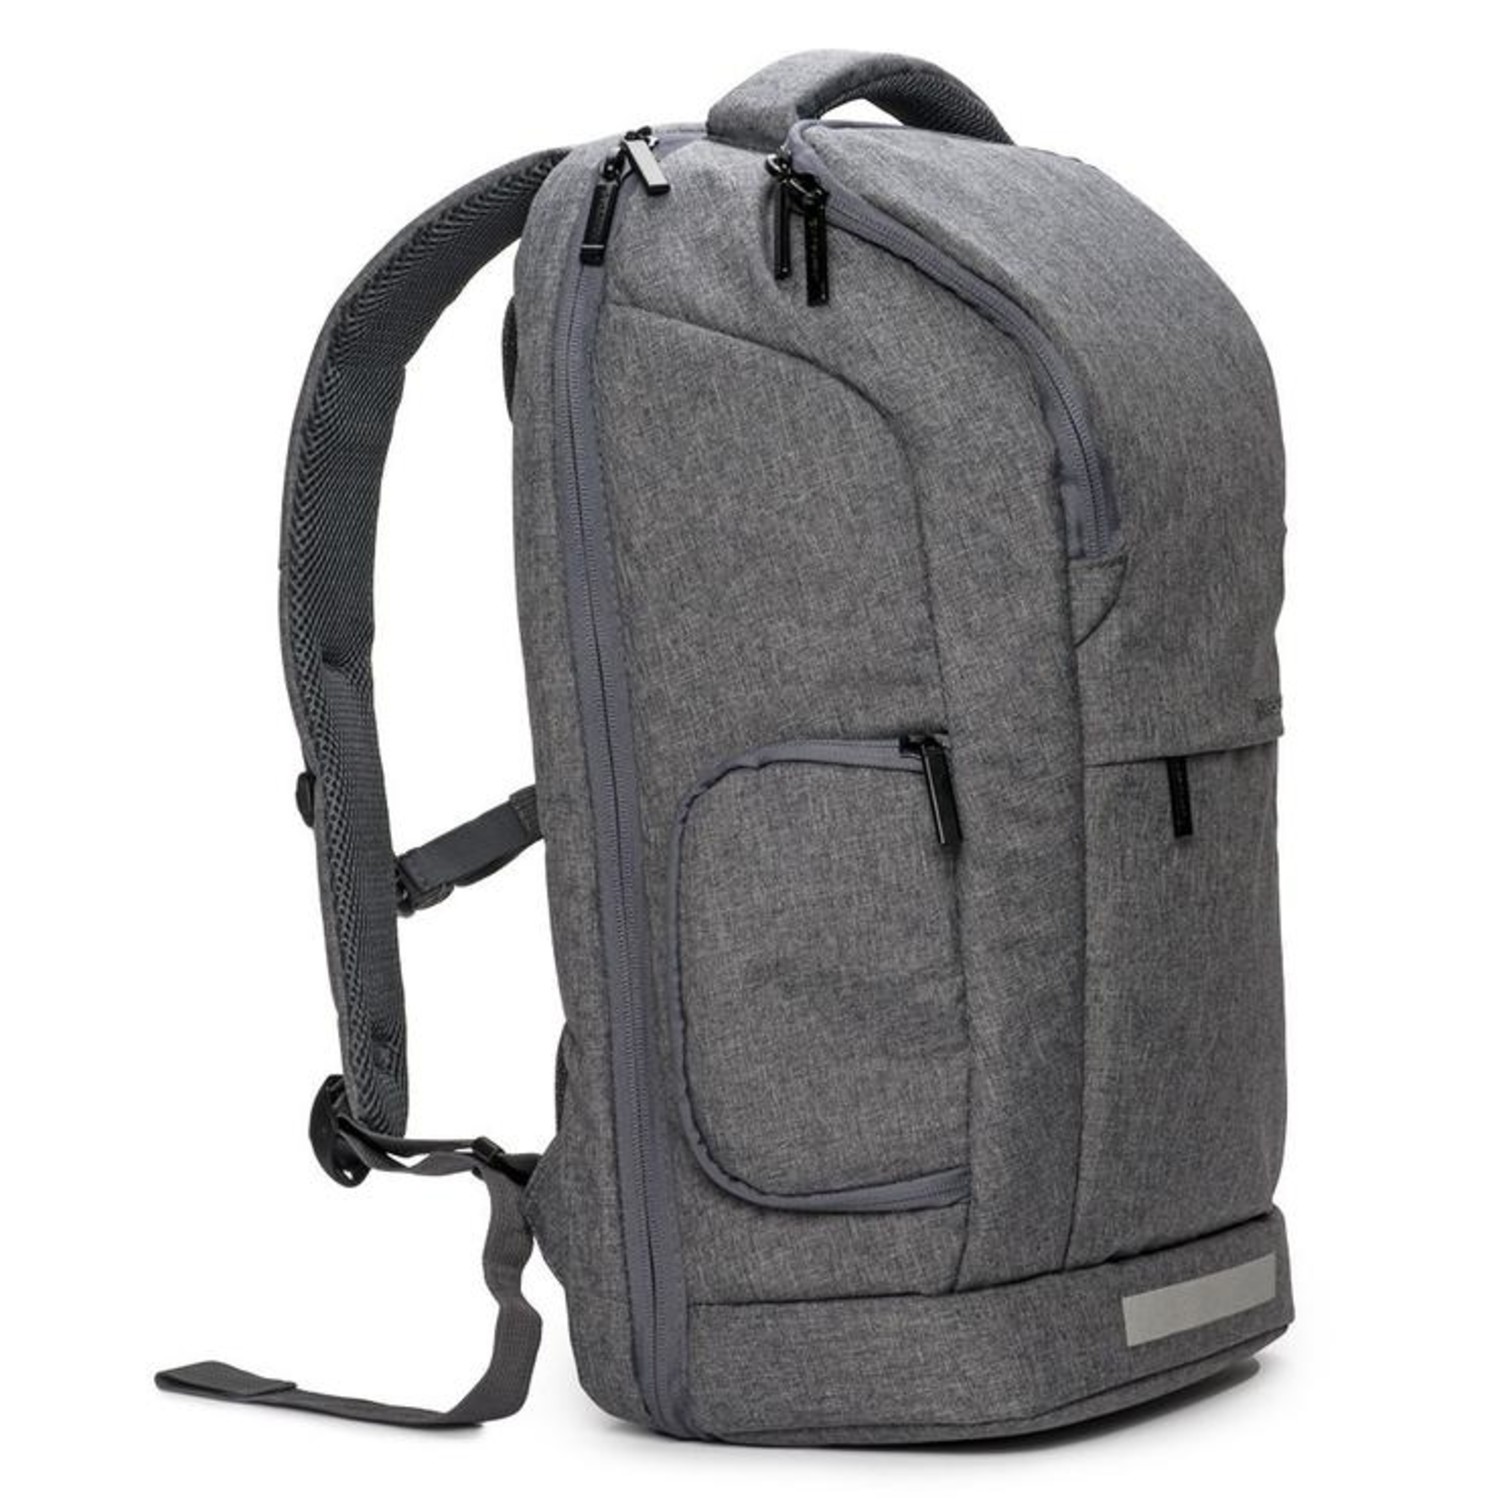 Ark Backpack (Gray) - VRS Design - Touch of Modern